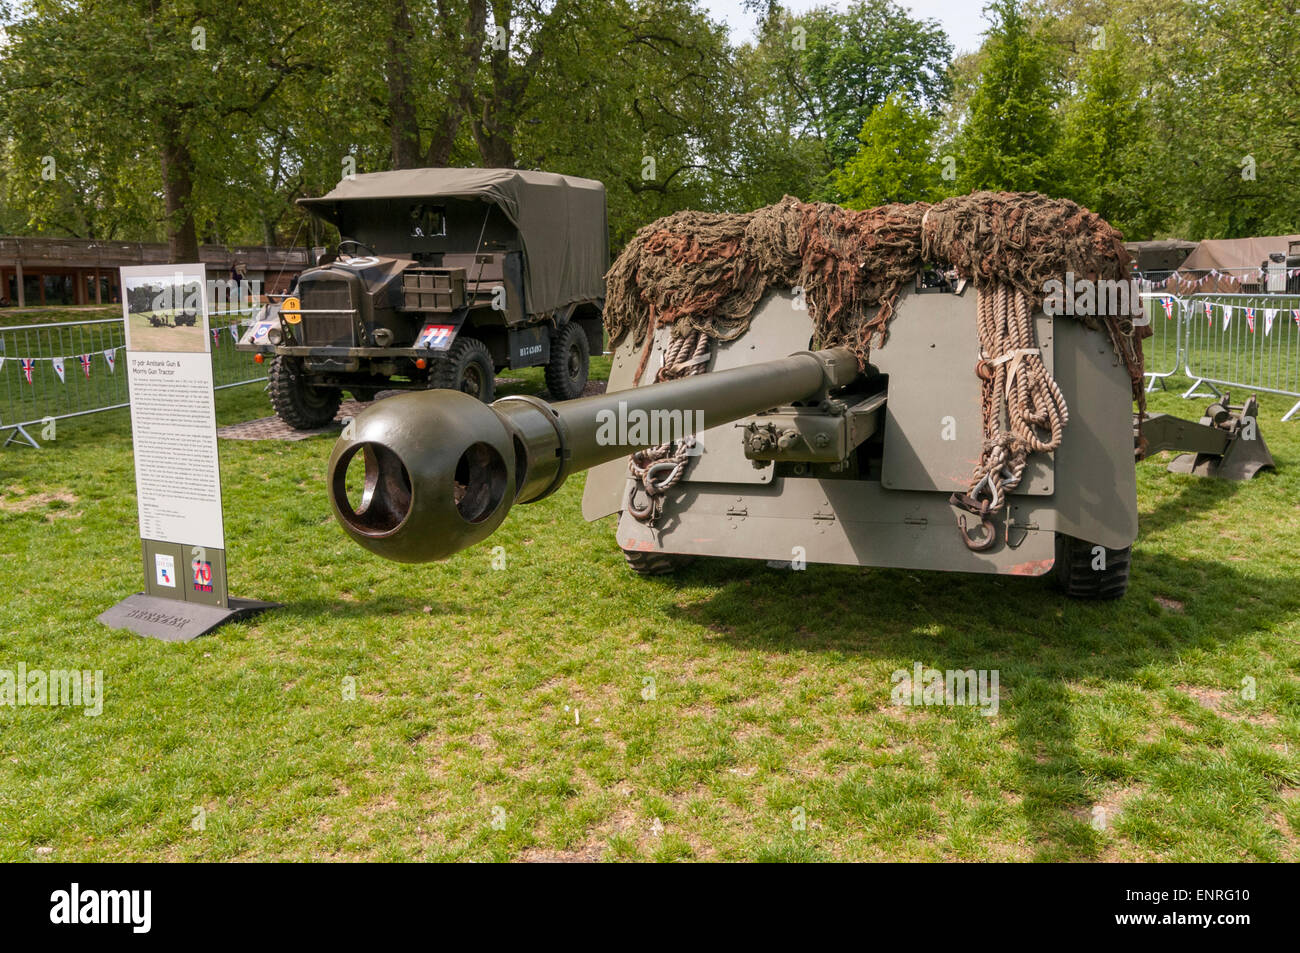 Londres, Royaume-Uni. 10 mai 2015. Un canon antichar de 17 pounder et Morris gun tracteur sont deux des éléments exposés au public dans une exposition spéciale de matériel de guerre dans le parc de St James, qui faisait partie de la capitale le jour de la victoire en 70e anniversaire. Crédit : Stephen Chung / Alamy Live News Banque D'Images